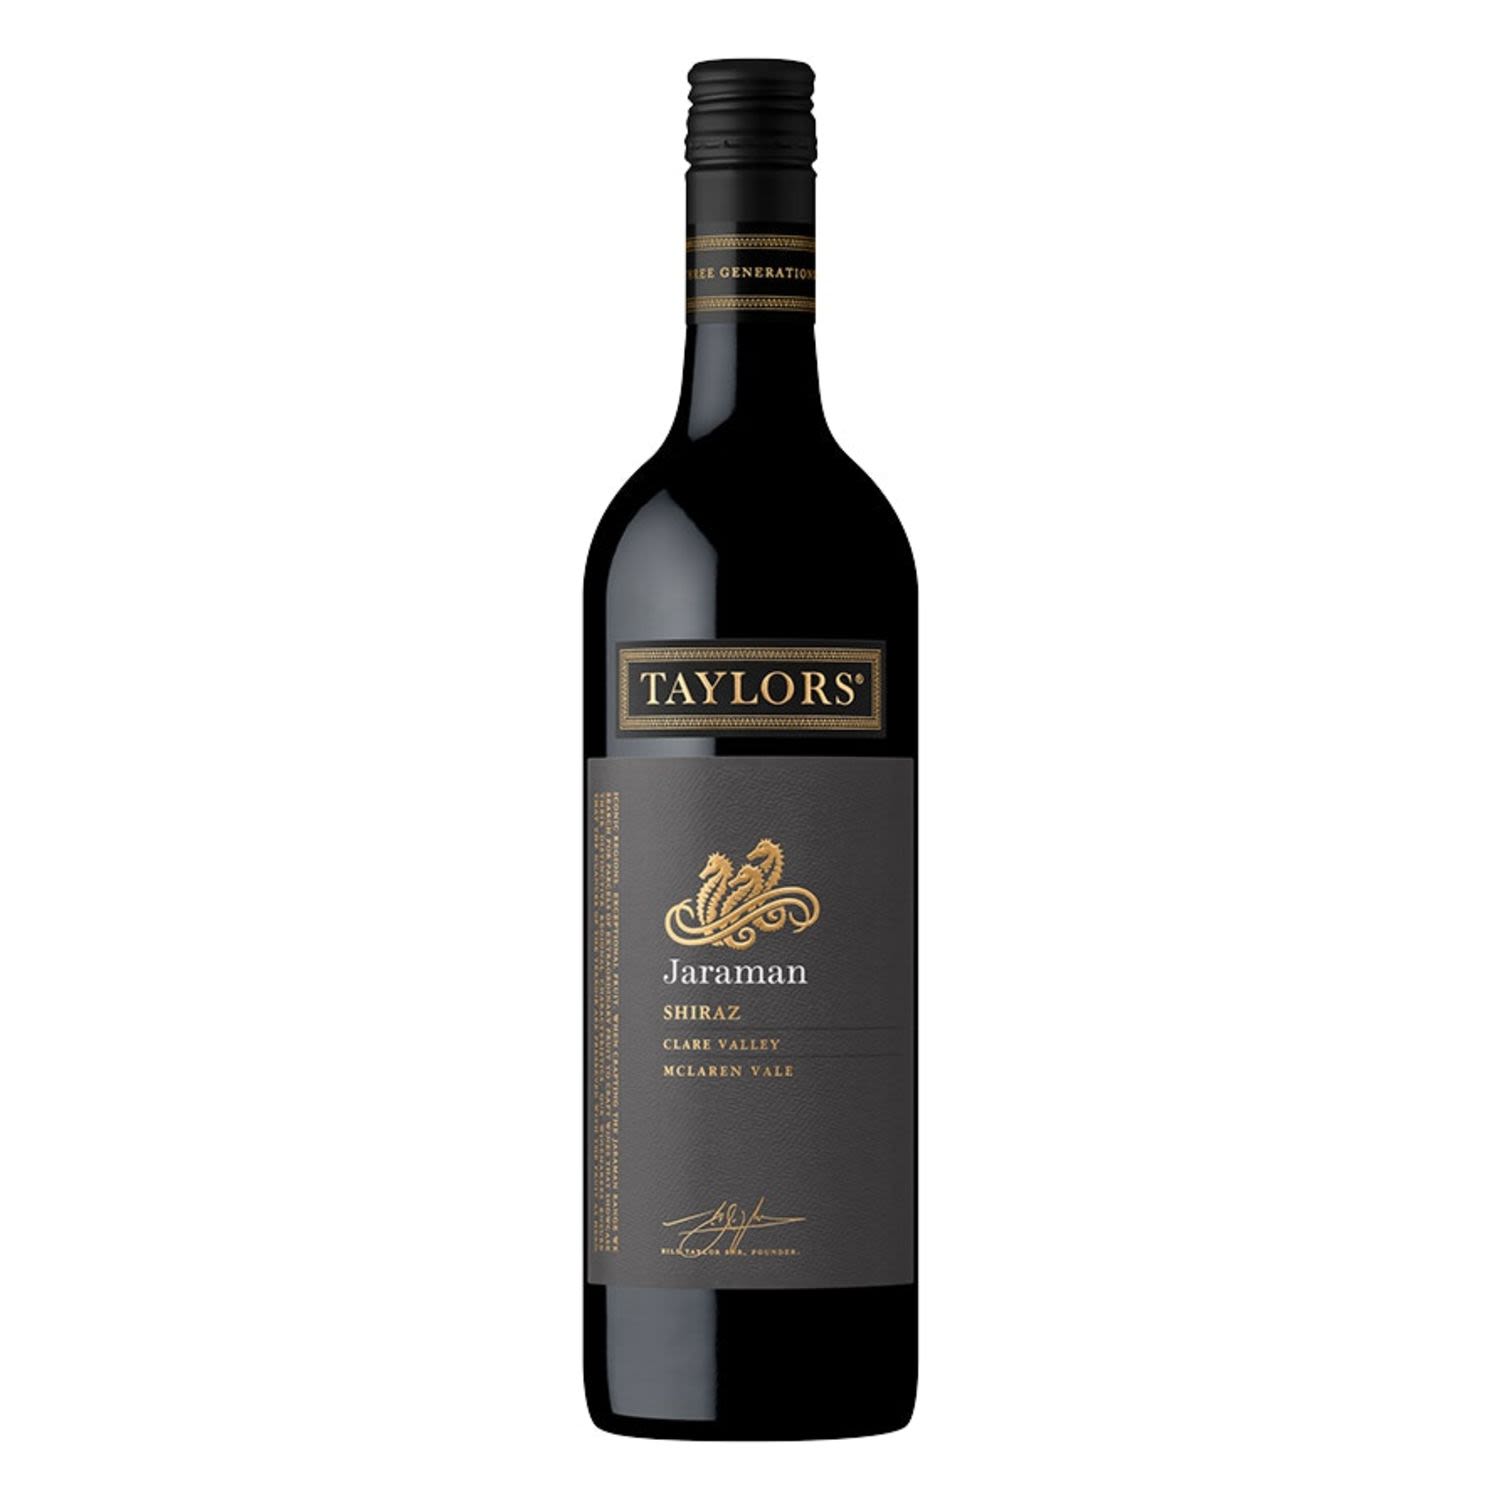 Taylors Jaraman Shiraz 750mL Bottle